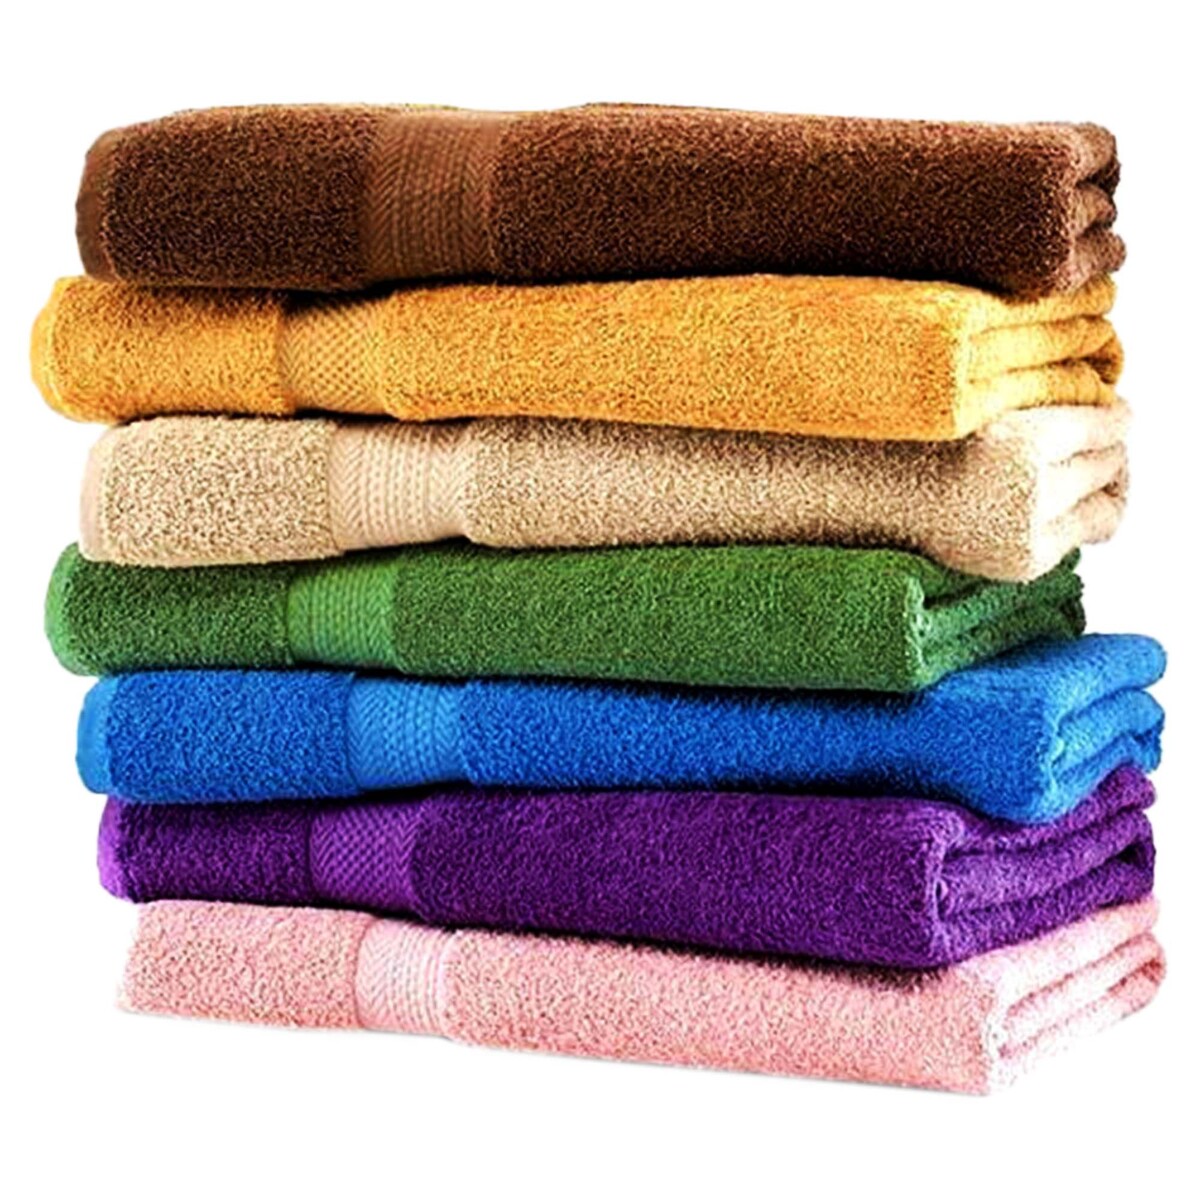 Regency Bath Towel Cotton 70 x 140cm Assorted Colors